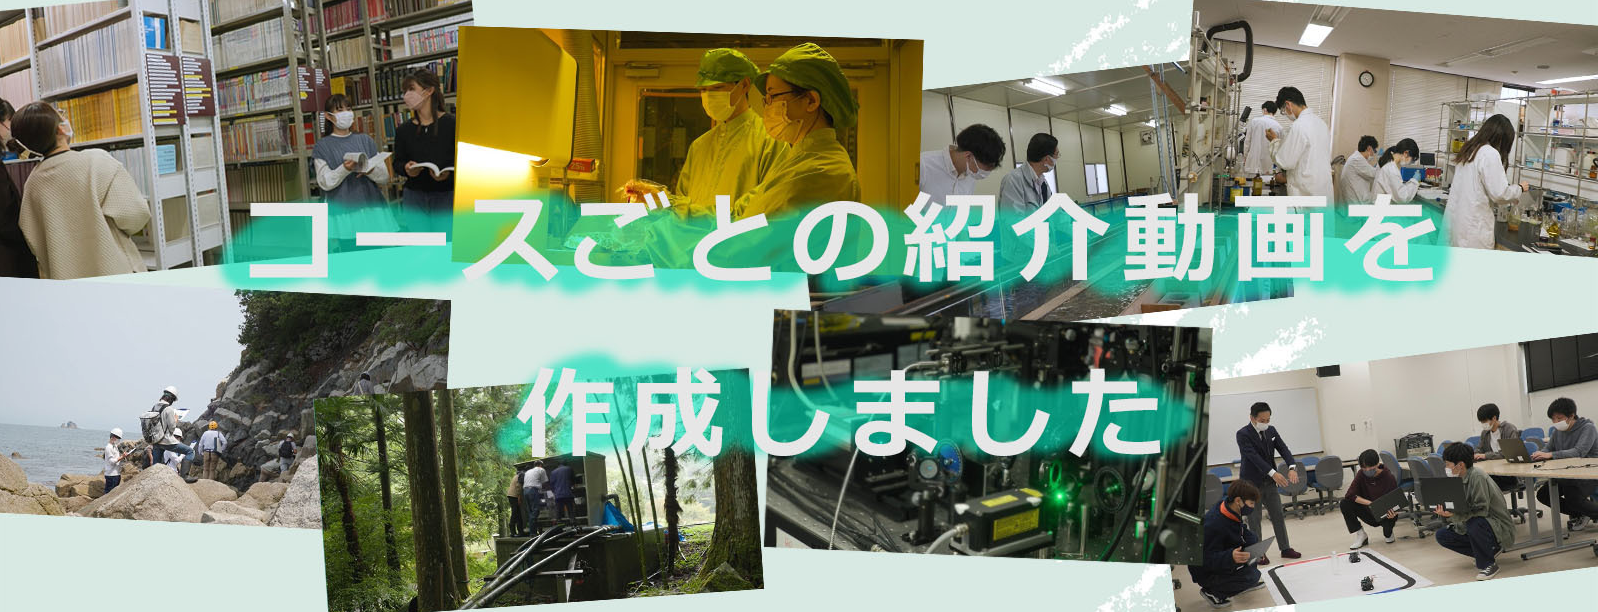 徳島大学理工学部の各コース紹介動画がまとめて公開されました